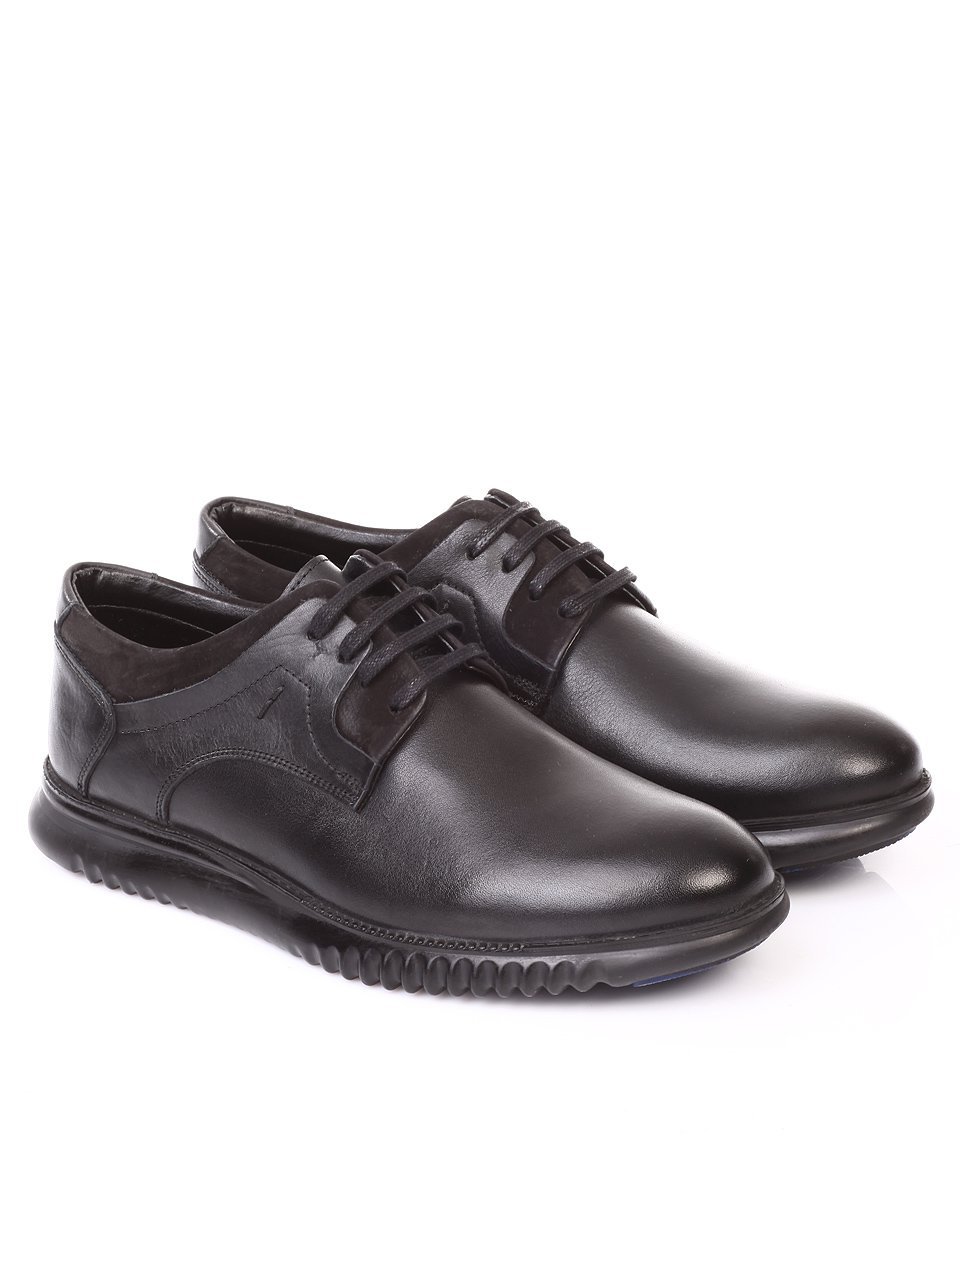 Спортно-елегантни мъжки обувки от естествена кожа 7AT-171206 black